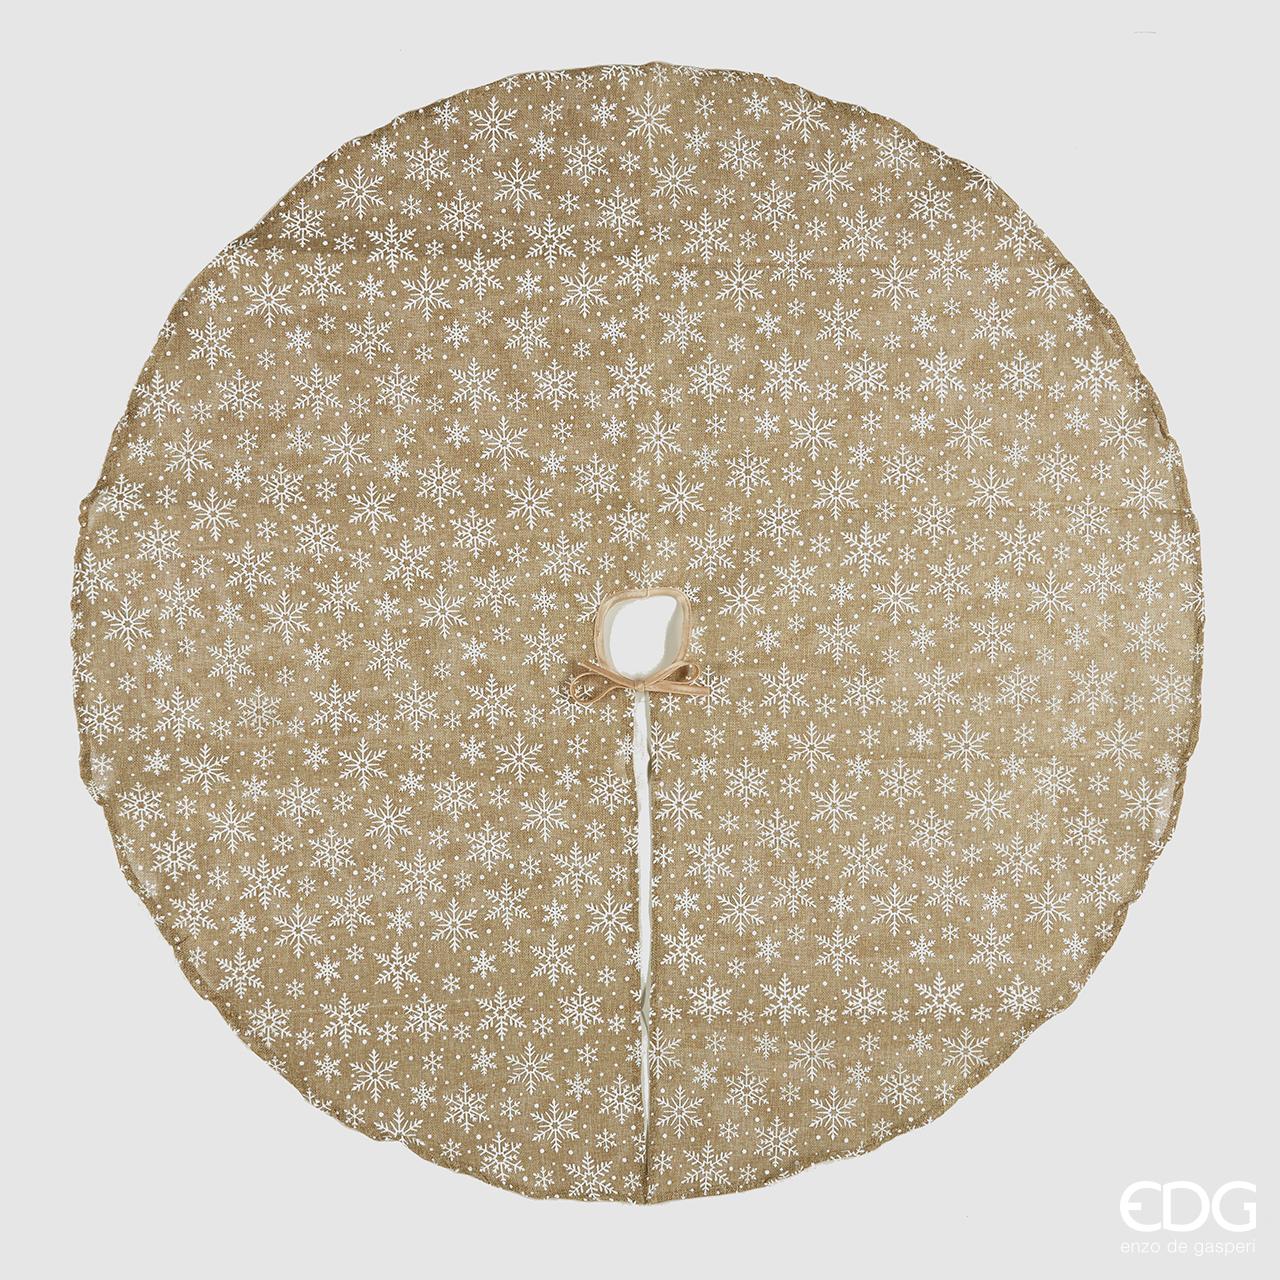 Copri base per albero di natale. Dimensioni: diametro cm 120 Colore: disegni in bianco su fondo beige scuro (juta).